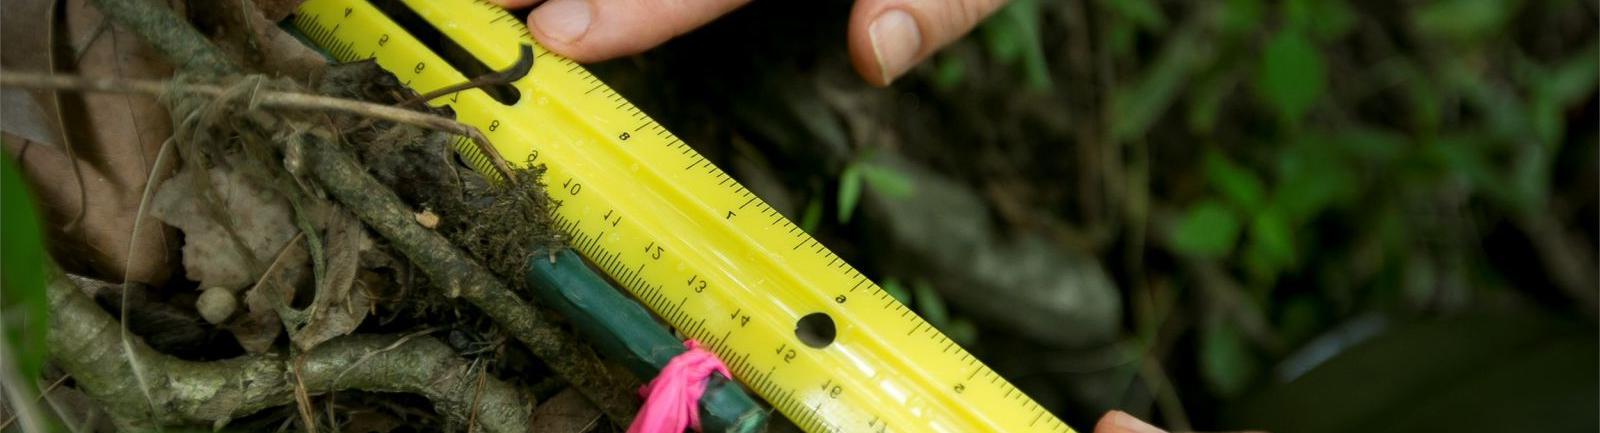 亿德体育学生在户外测量植物和藤蔓之间的标记.